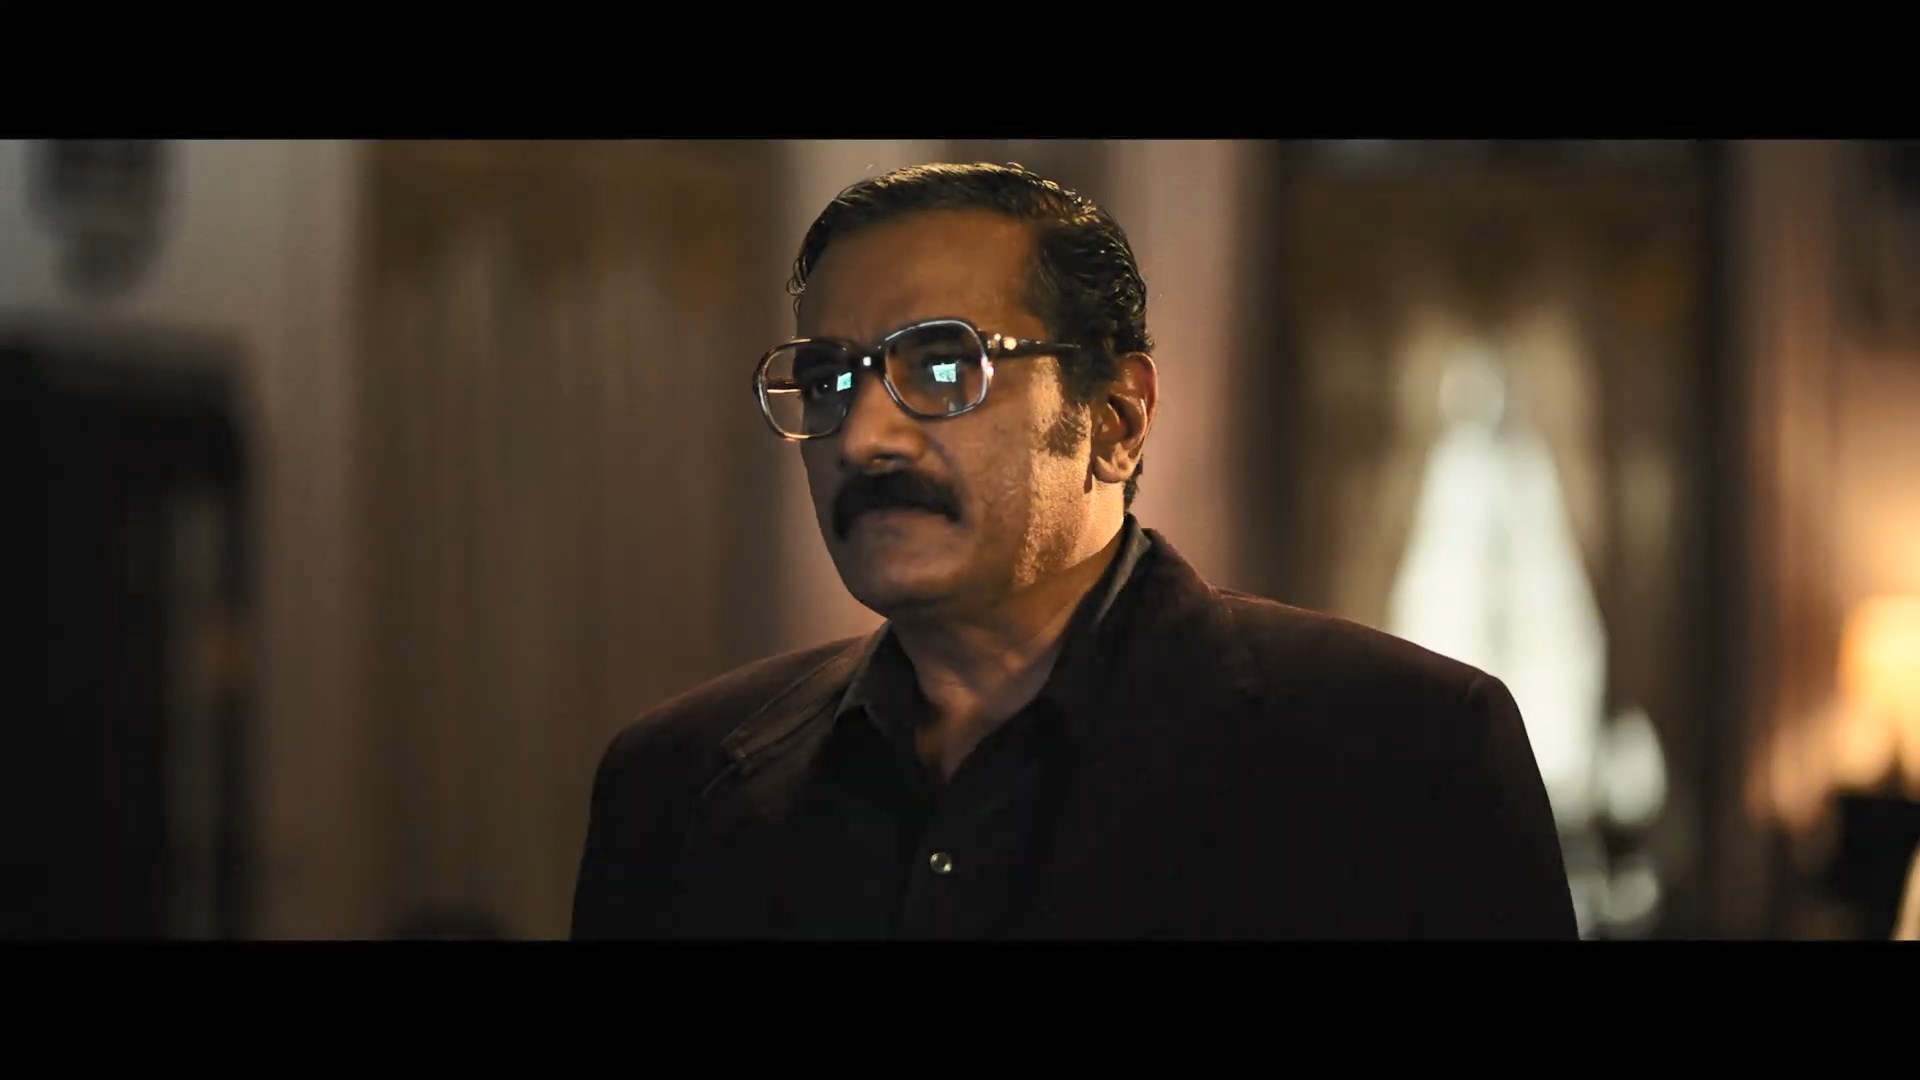 KGF-Chapter-2-Trailer-Hindi-Yash-Sanjay-Dutt-Raveena-Tandon-Srinidhi-Prashanth-Neel-Vijay-Kiragandur.mp4_snapshot_01.14.166.jpg